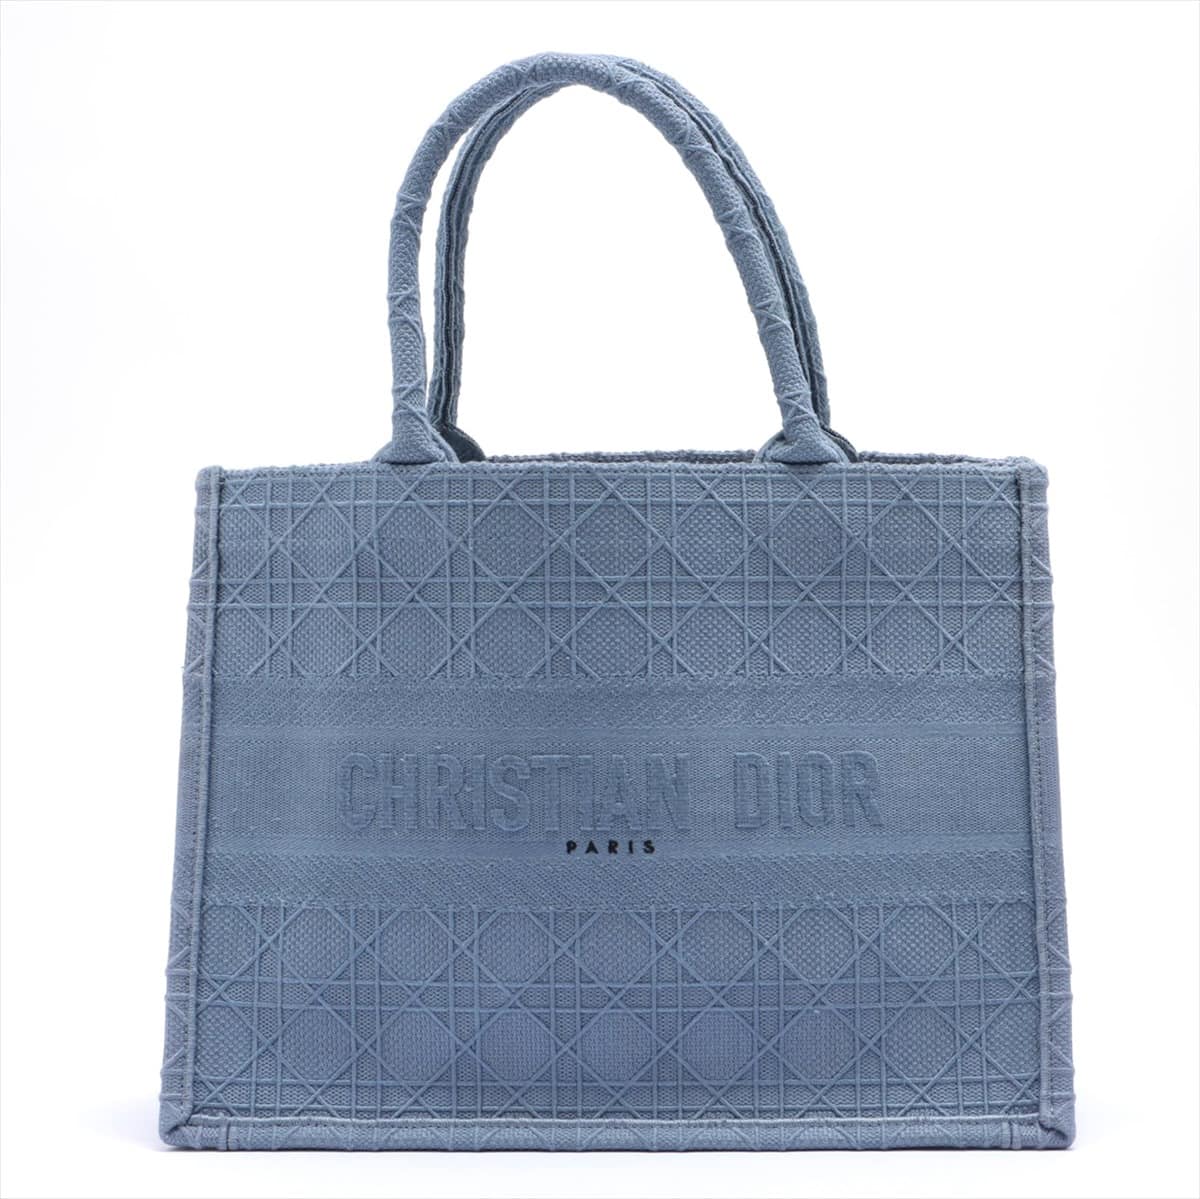 Christian Dior Book Tote small canvas Tote bag Blue